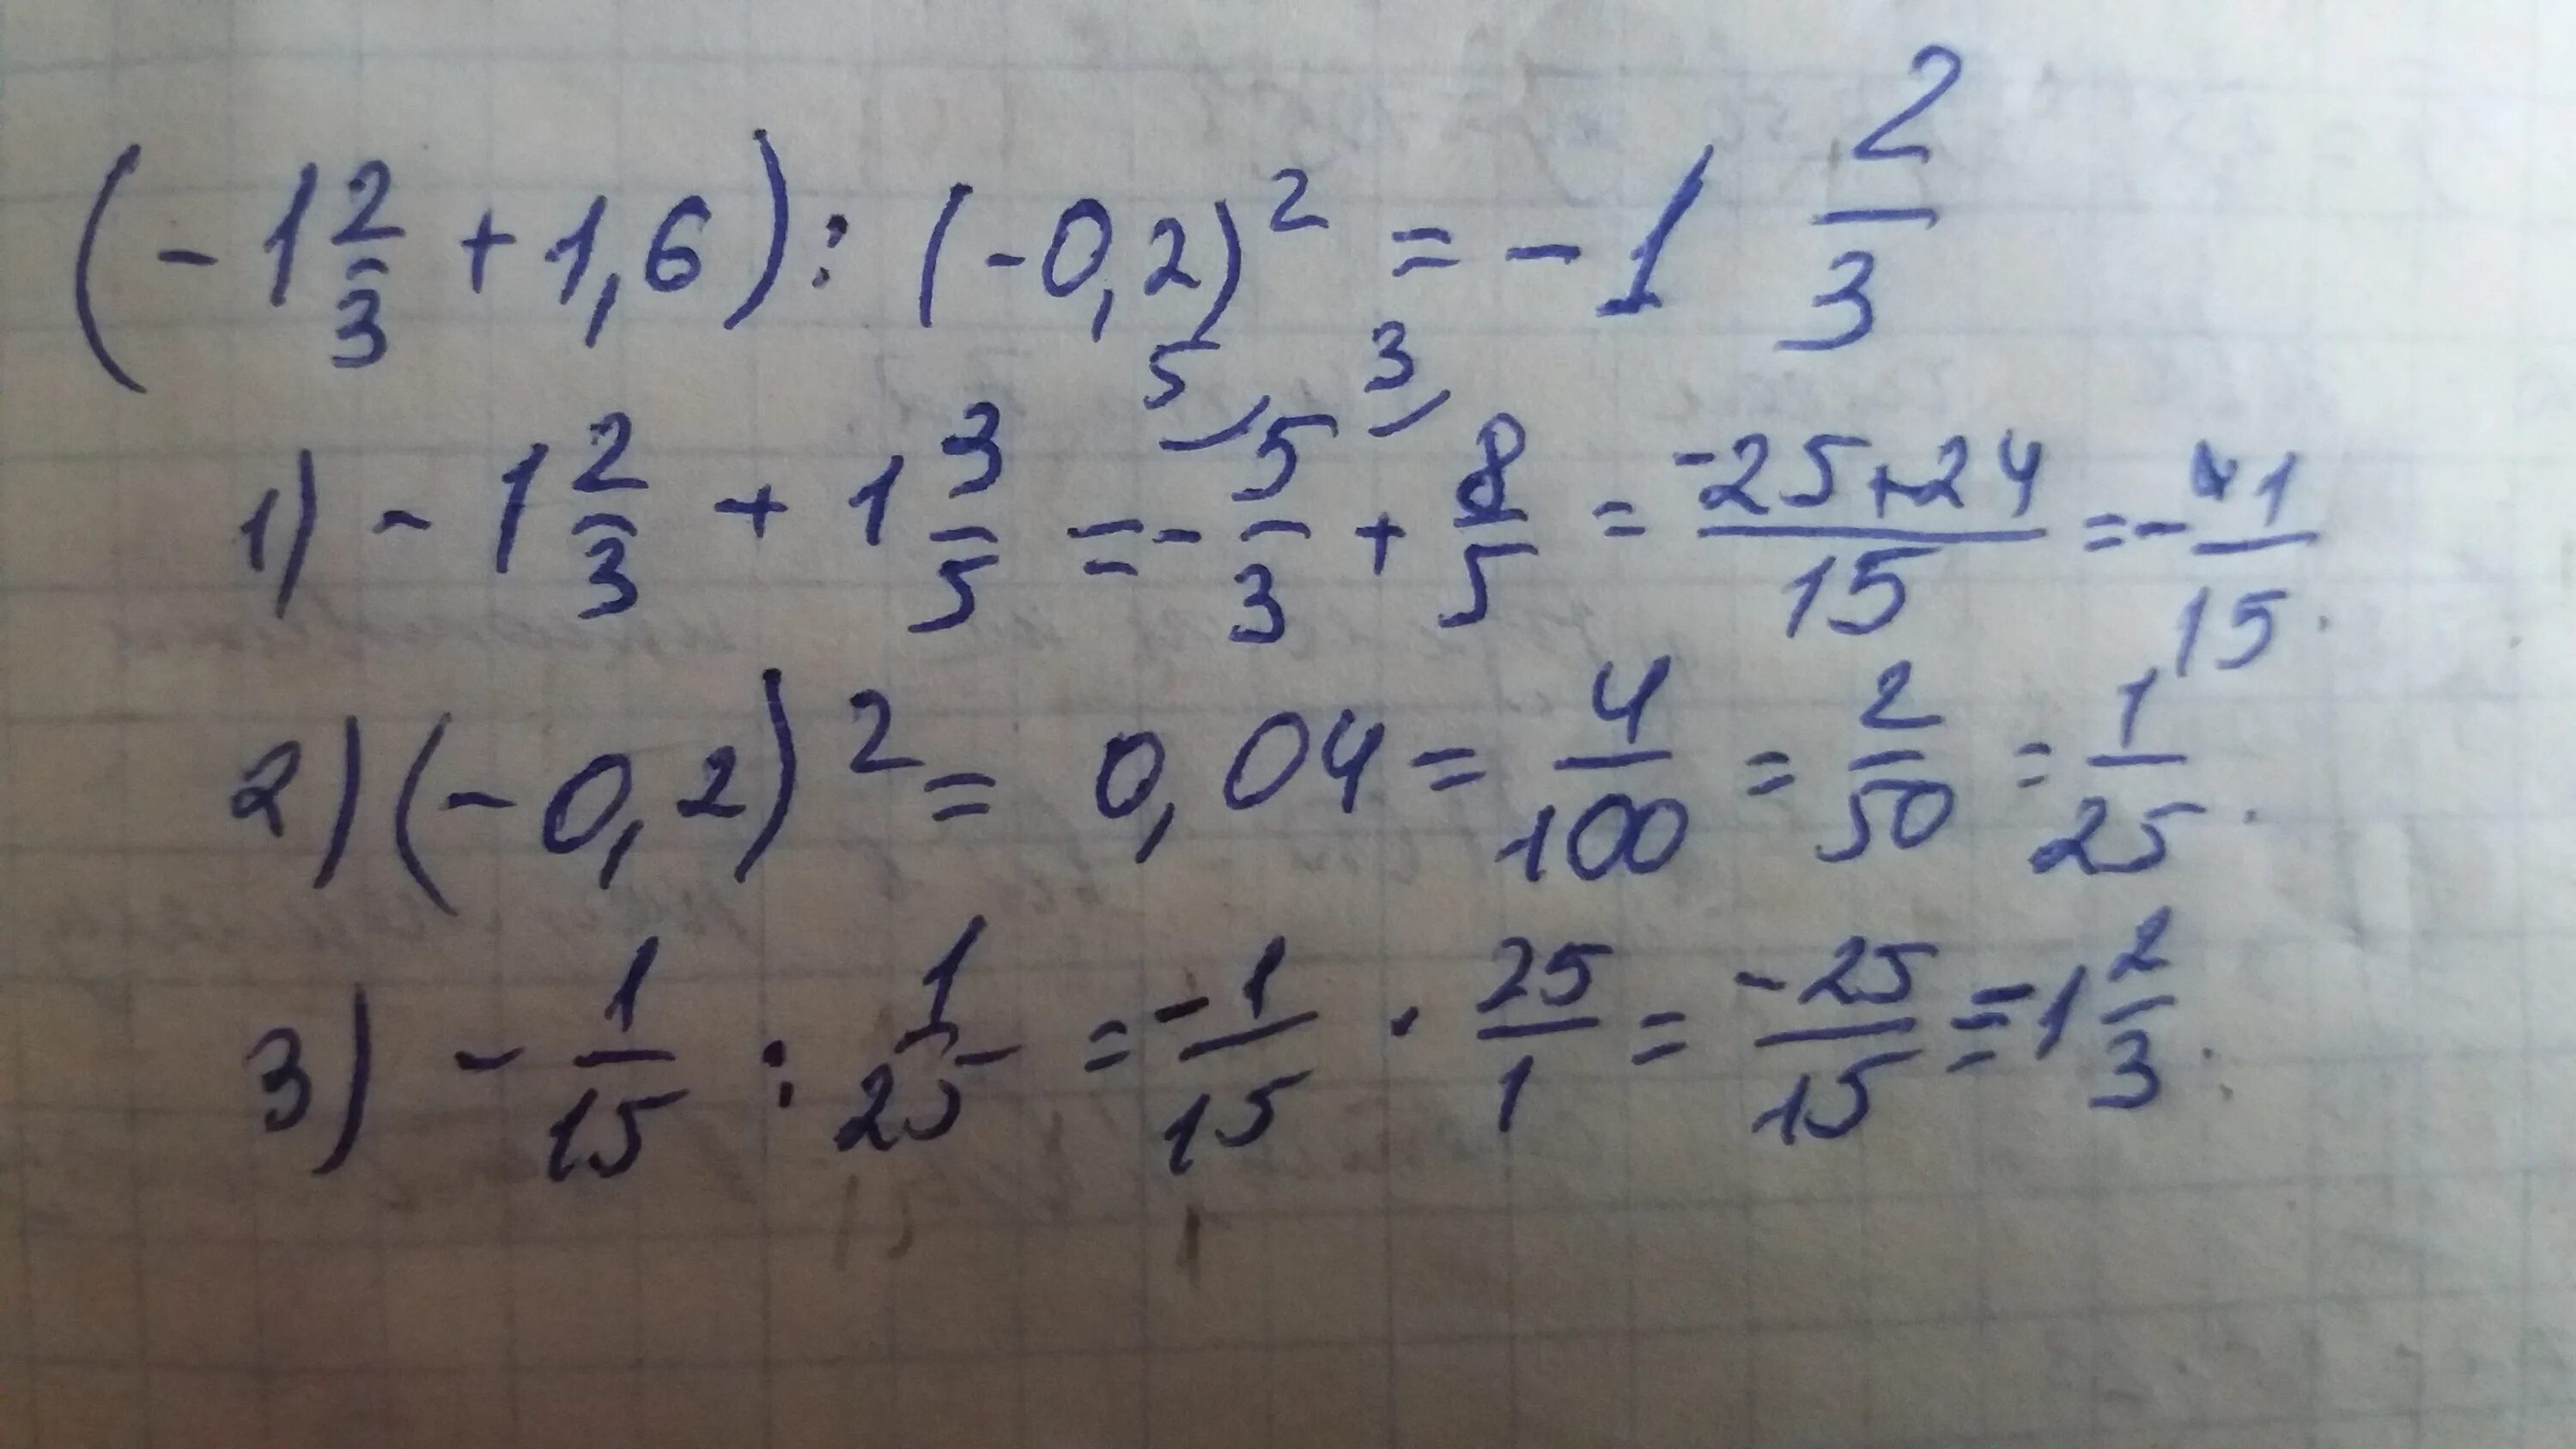 Найти значение выражения 4 в кубе. 3 Целых 1/3 в квадрате. 1 Целая 1 3 в квадрате. 6 1 3 В квадрате 14 1/3. 2*(-3) В квадрате -3:(-1) в Кубе.